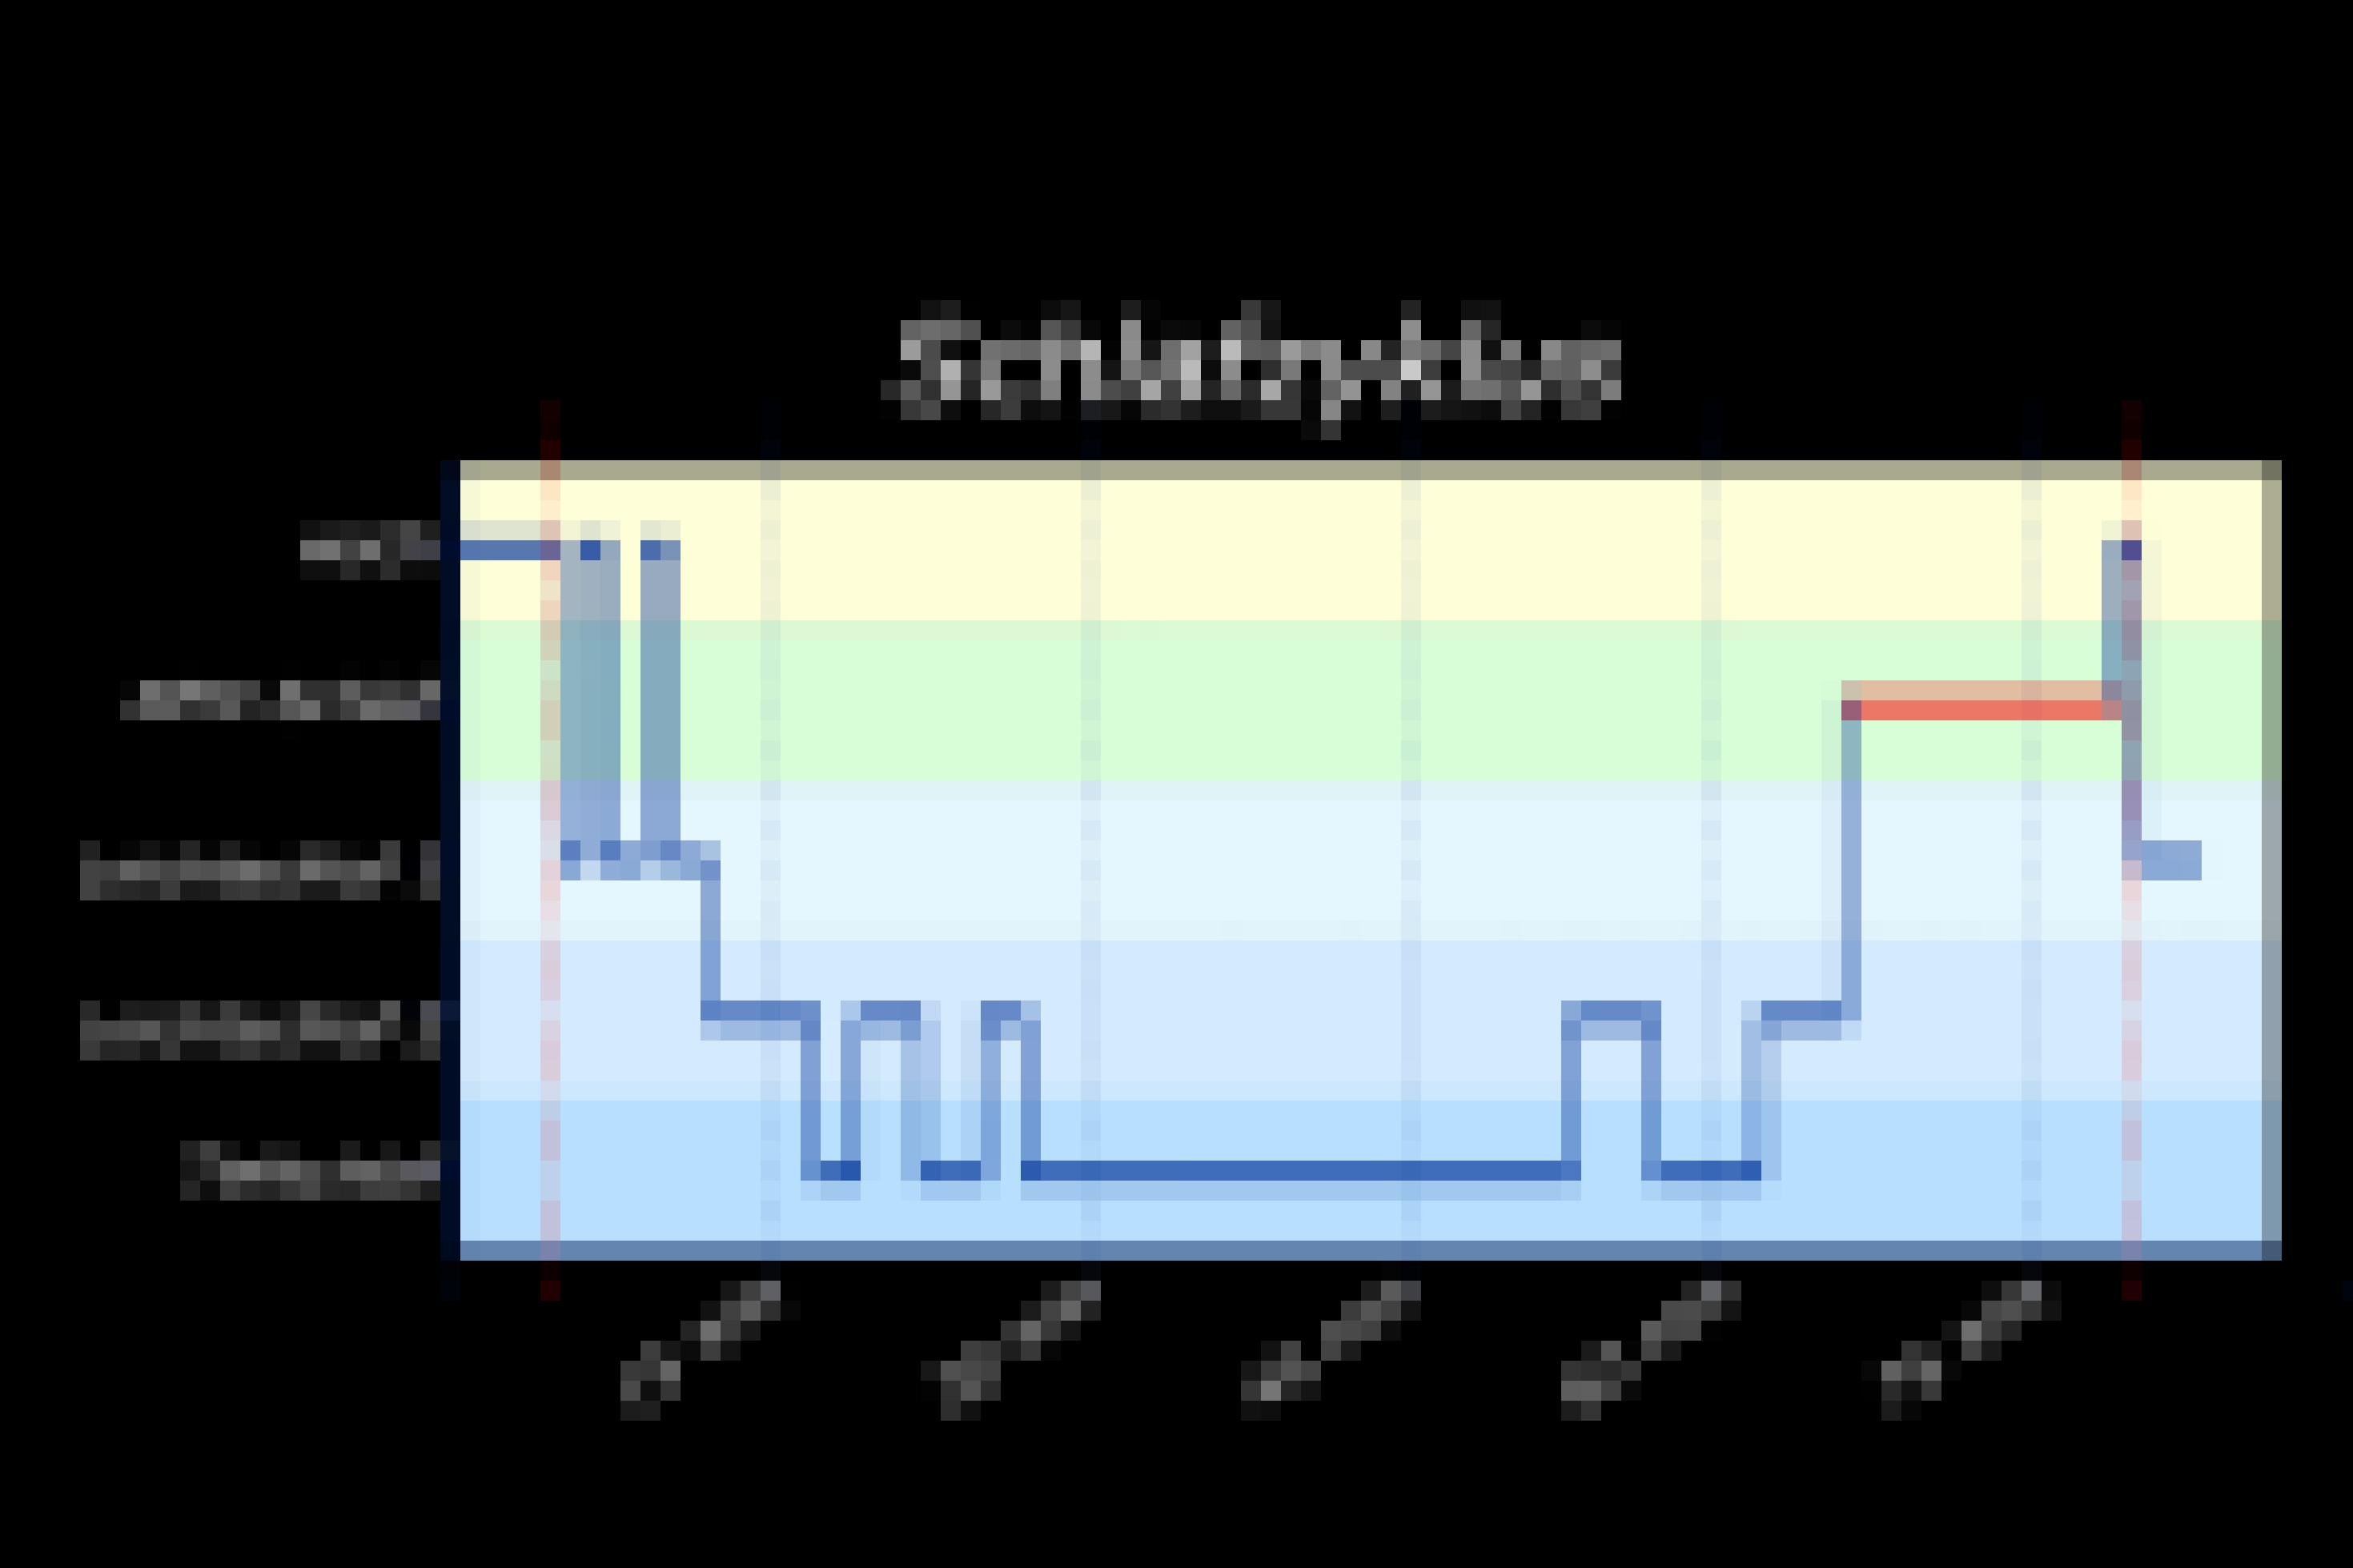 Zu sehen ist eine graphische Darstellung mit einer blauen Kurve, die sich auf hellgelbem bis hellblauem Untergrund hinzieht. Sie zeigt den Ablauf eines Schlafzyklus vom Einschlafen, über Leichtschlafstadien zum Tiefschlaf und schließlich dem Traumschlaf. Die Grafik steht auf schwarzem Hintergrund, am Rand stehen weiße Beschriftungen (etwa zu den Stadien und zur zeitlichen Dauer).